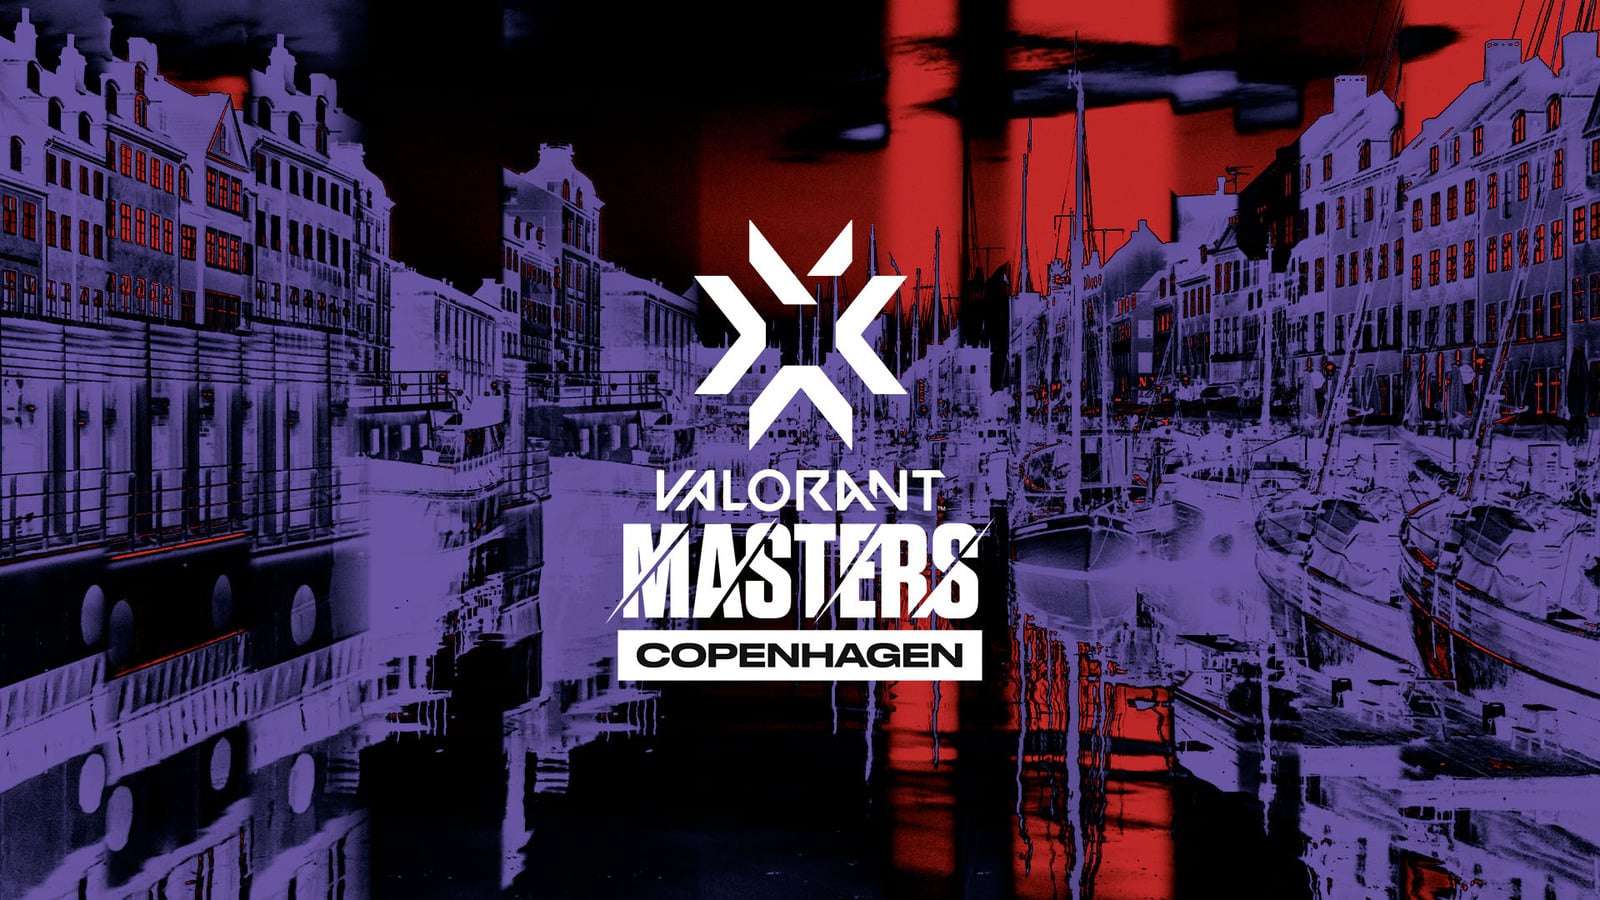 VCT Masters Copenhagen announcement graphic